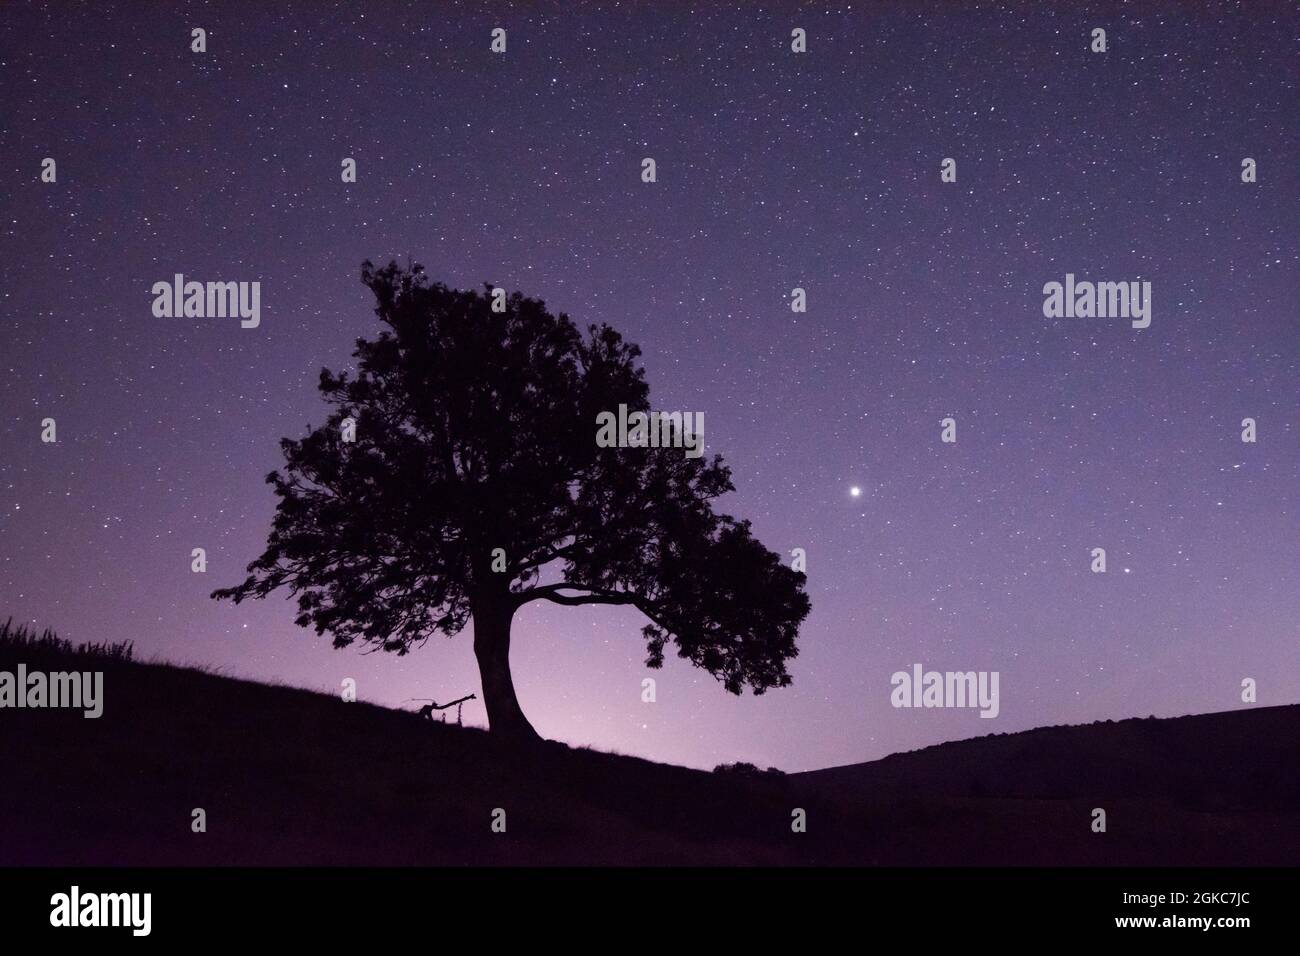 Étoiles et planètes Jupiter et Saturne à côté de la silhouette de l'arbre, Jupiter brillant à droite de l'arbre, Saturne plus à droite et plus bas, Sussex, Royaume-Uni Banque D'Images